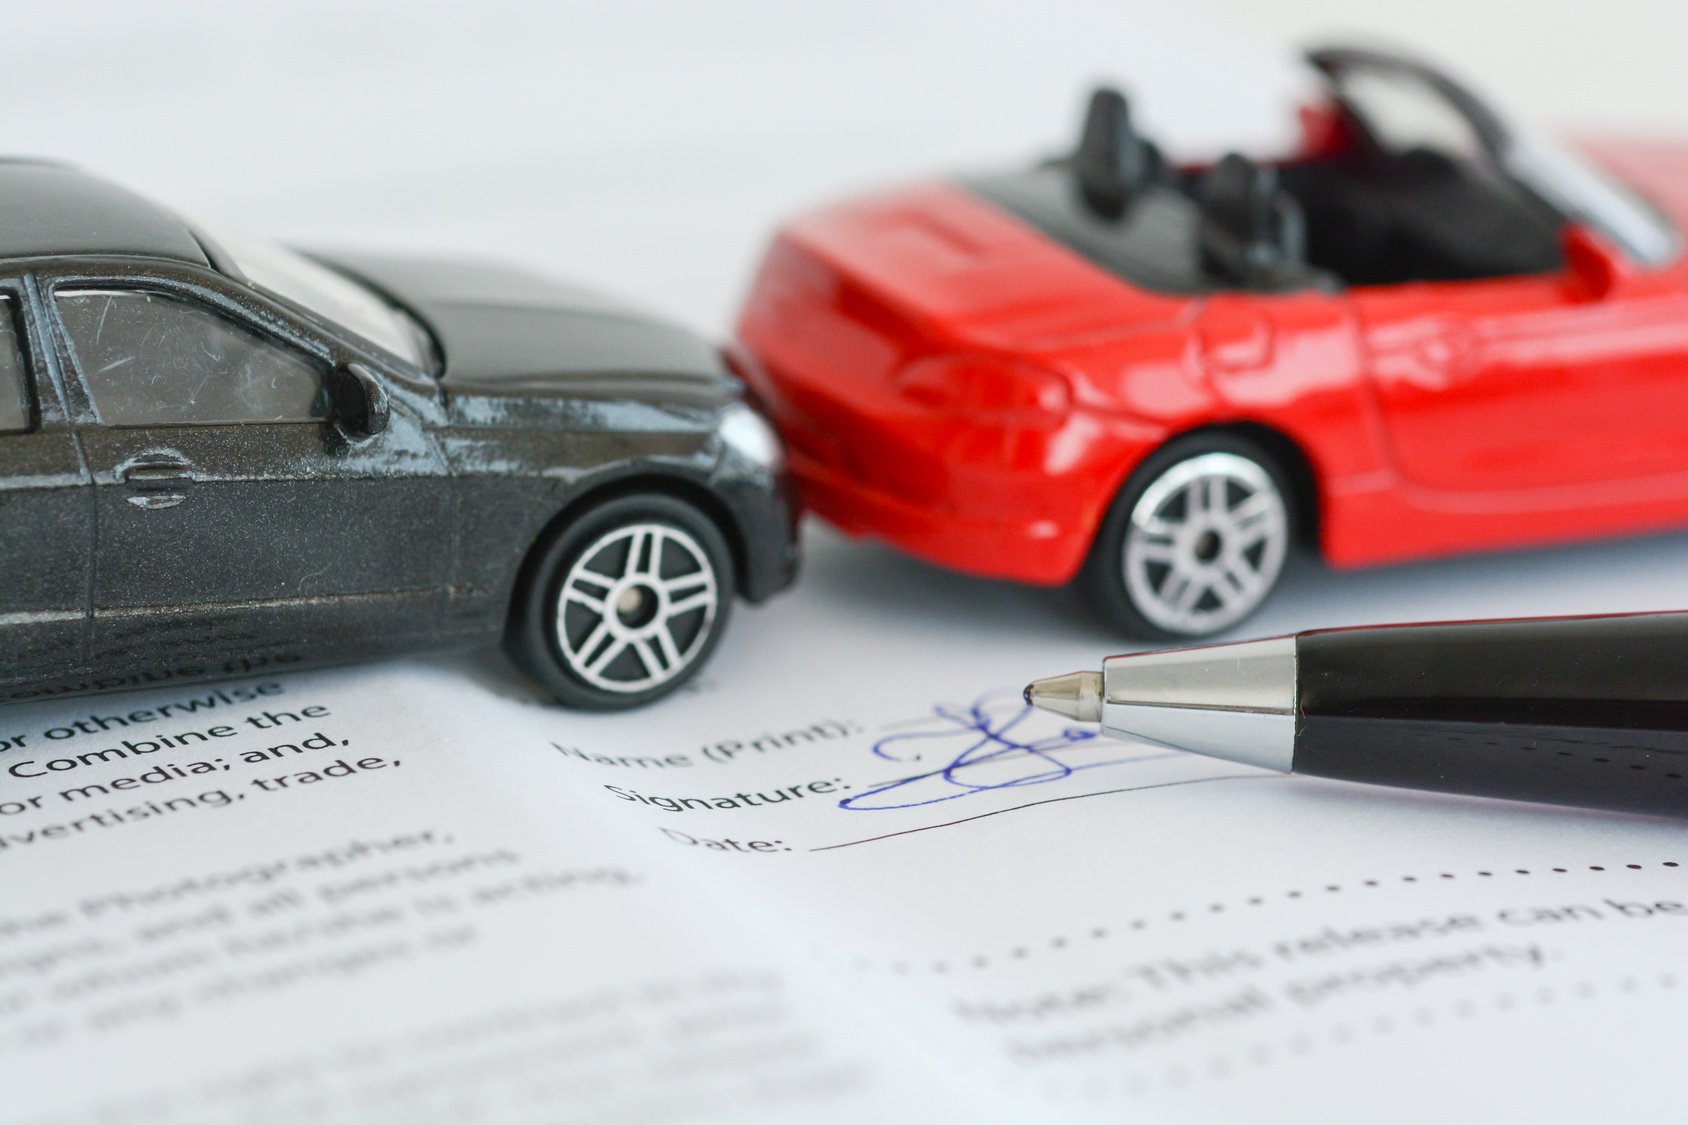 Ανασφάλιστα οχήματα: Αναμένεται τροπολογία για την επιστροφή παραβόλων στους ιδιοκτήτες των ΙΧ που ήταν στη λίστα των διασταυρώσεων